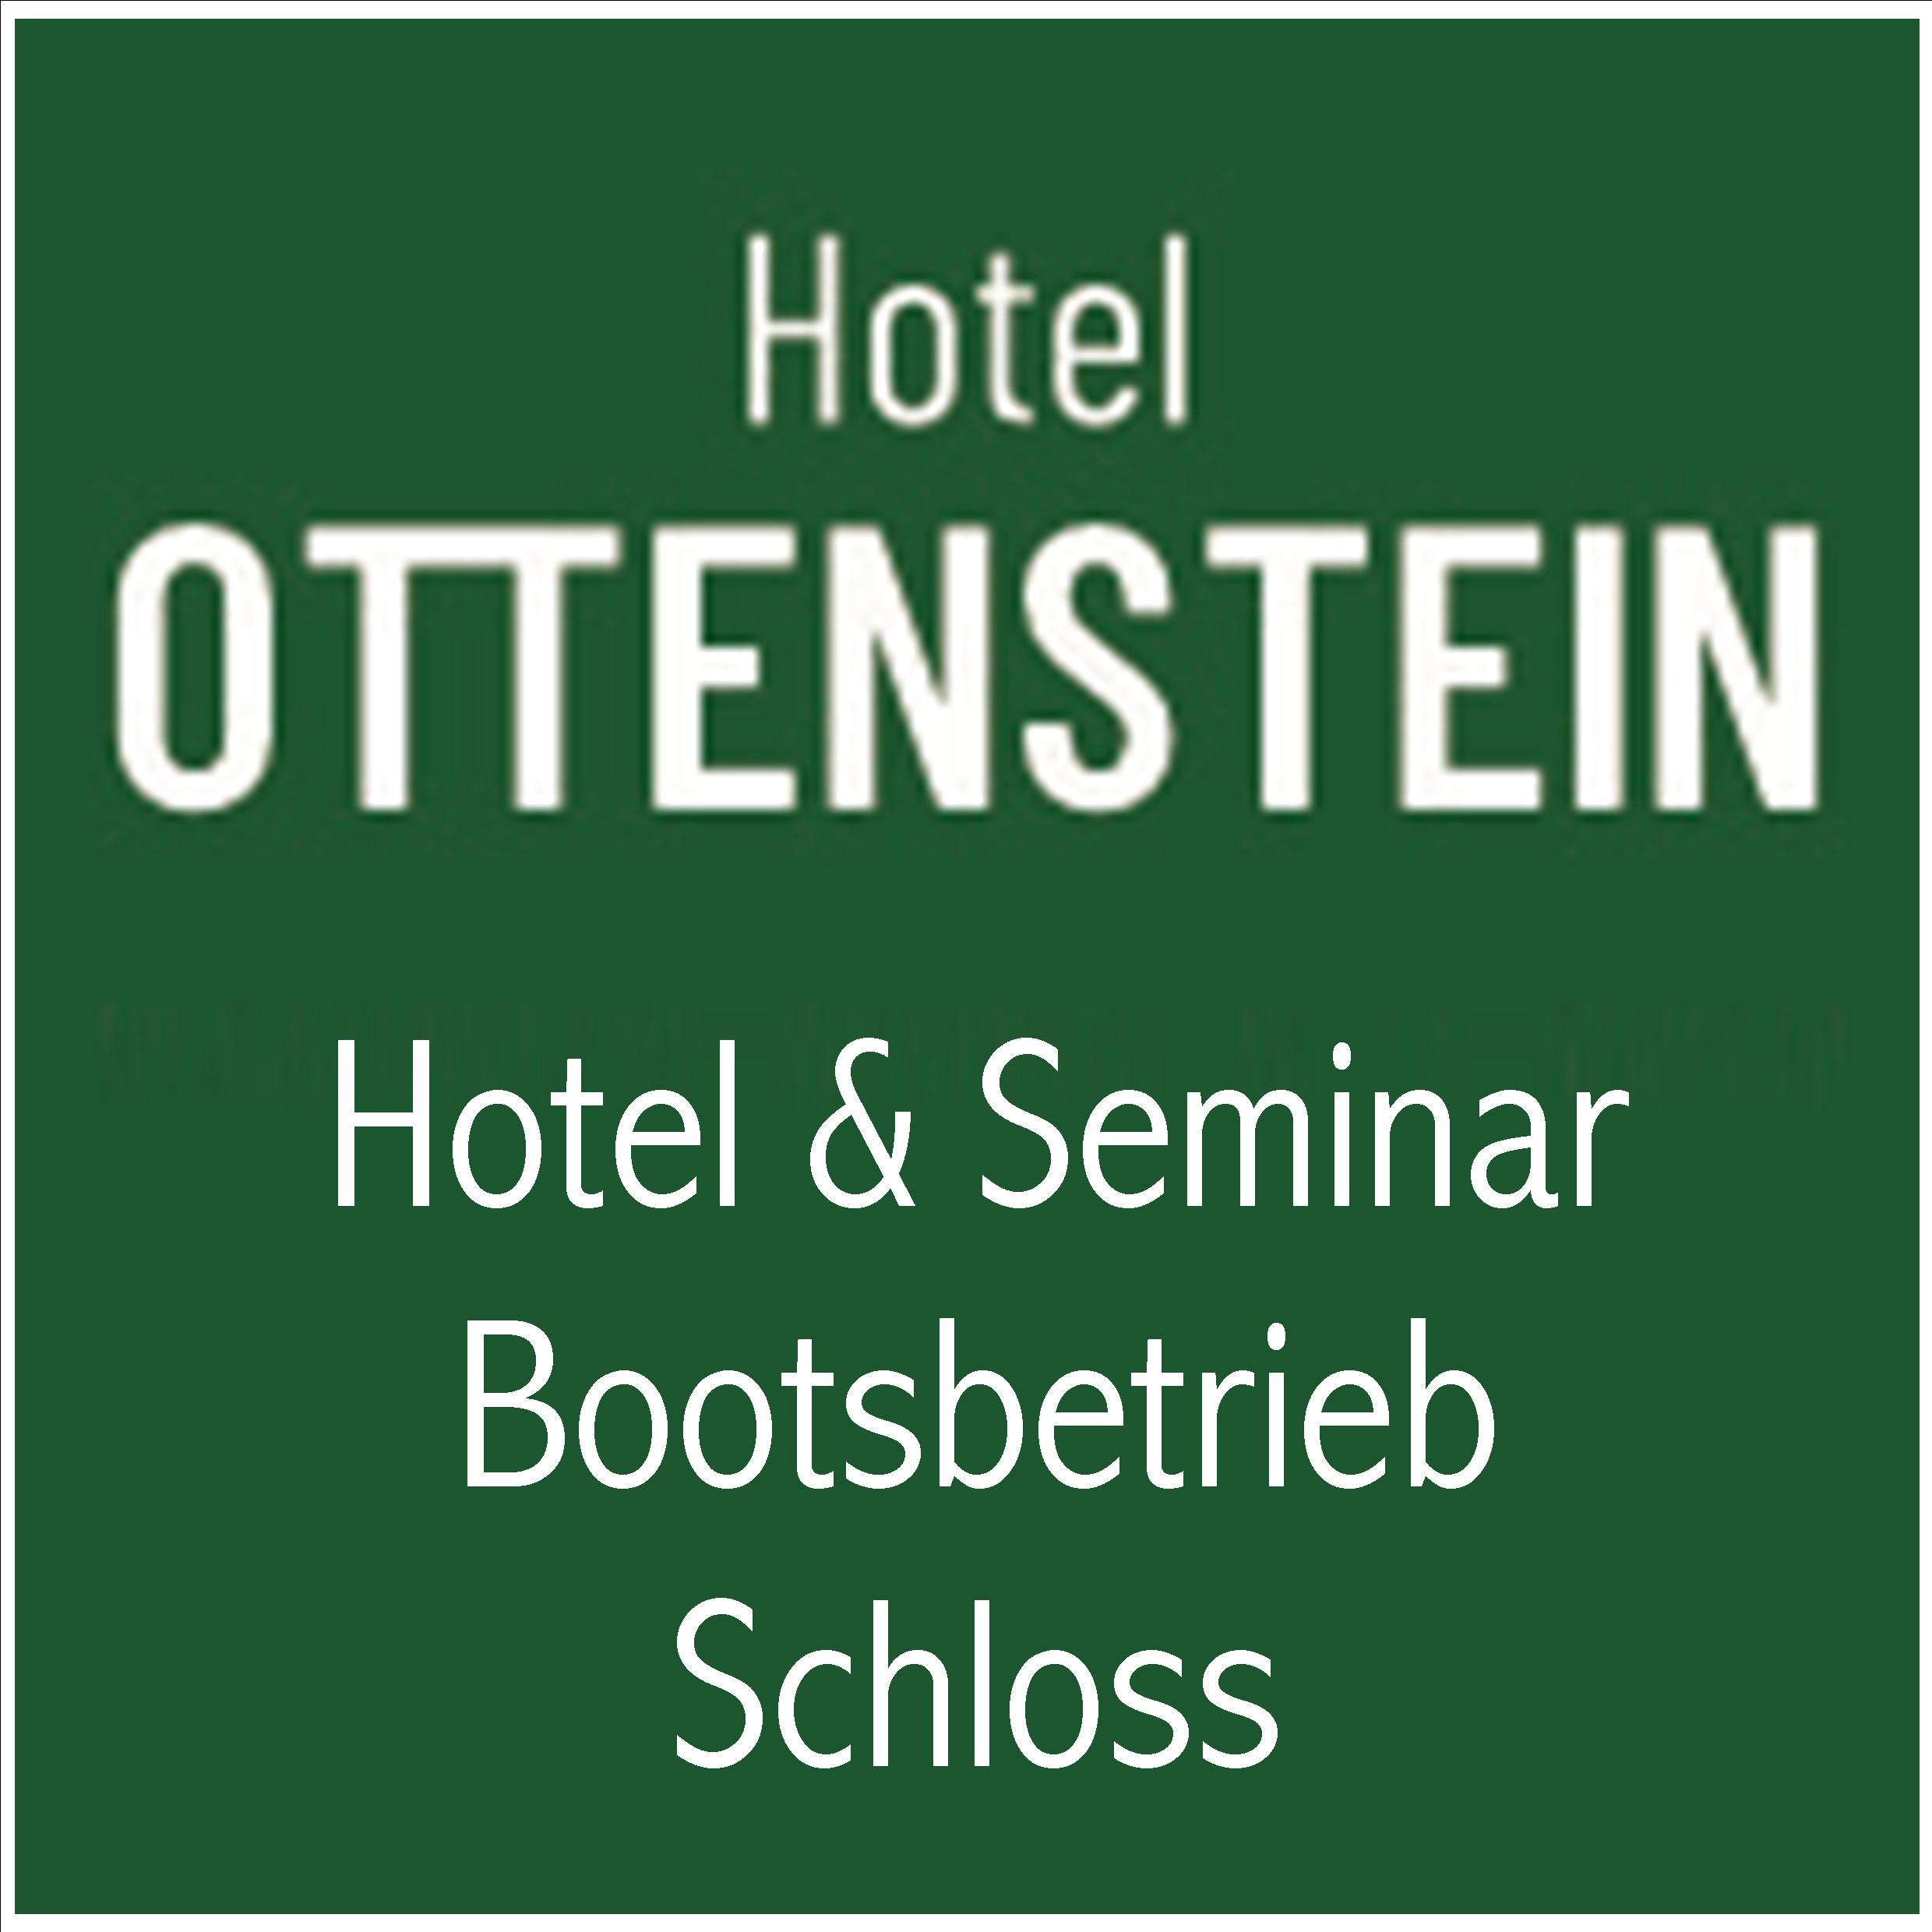 Ottenstein Logo gruen